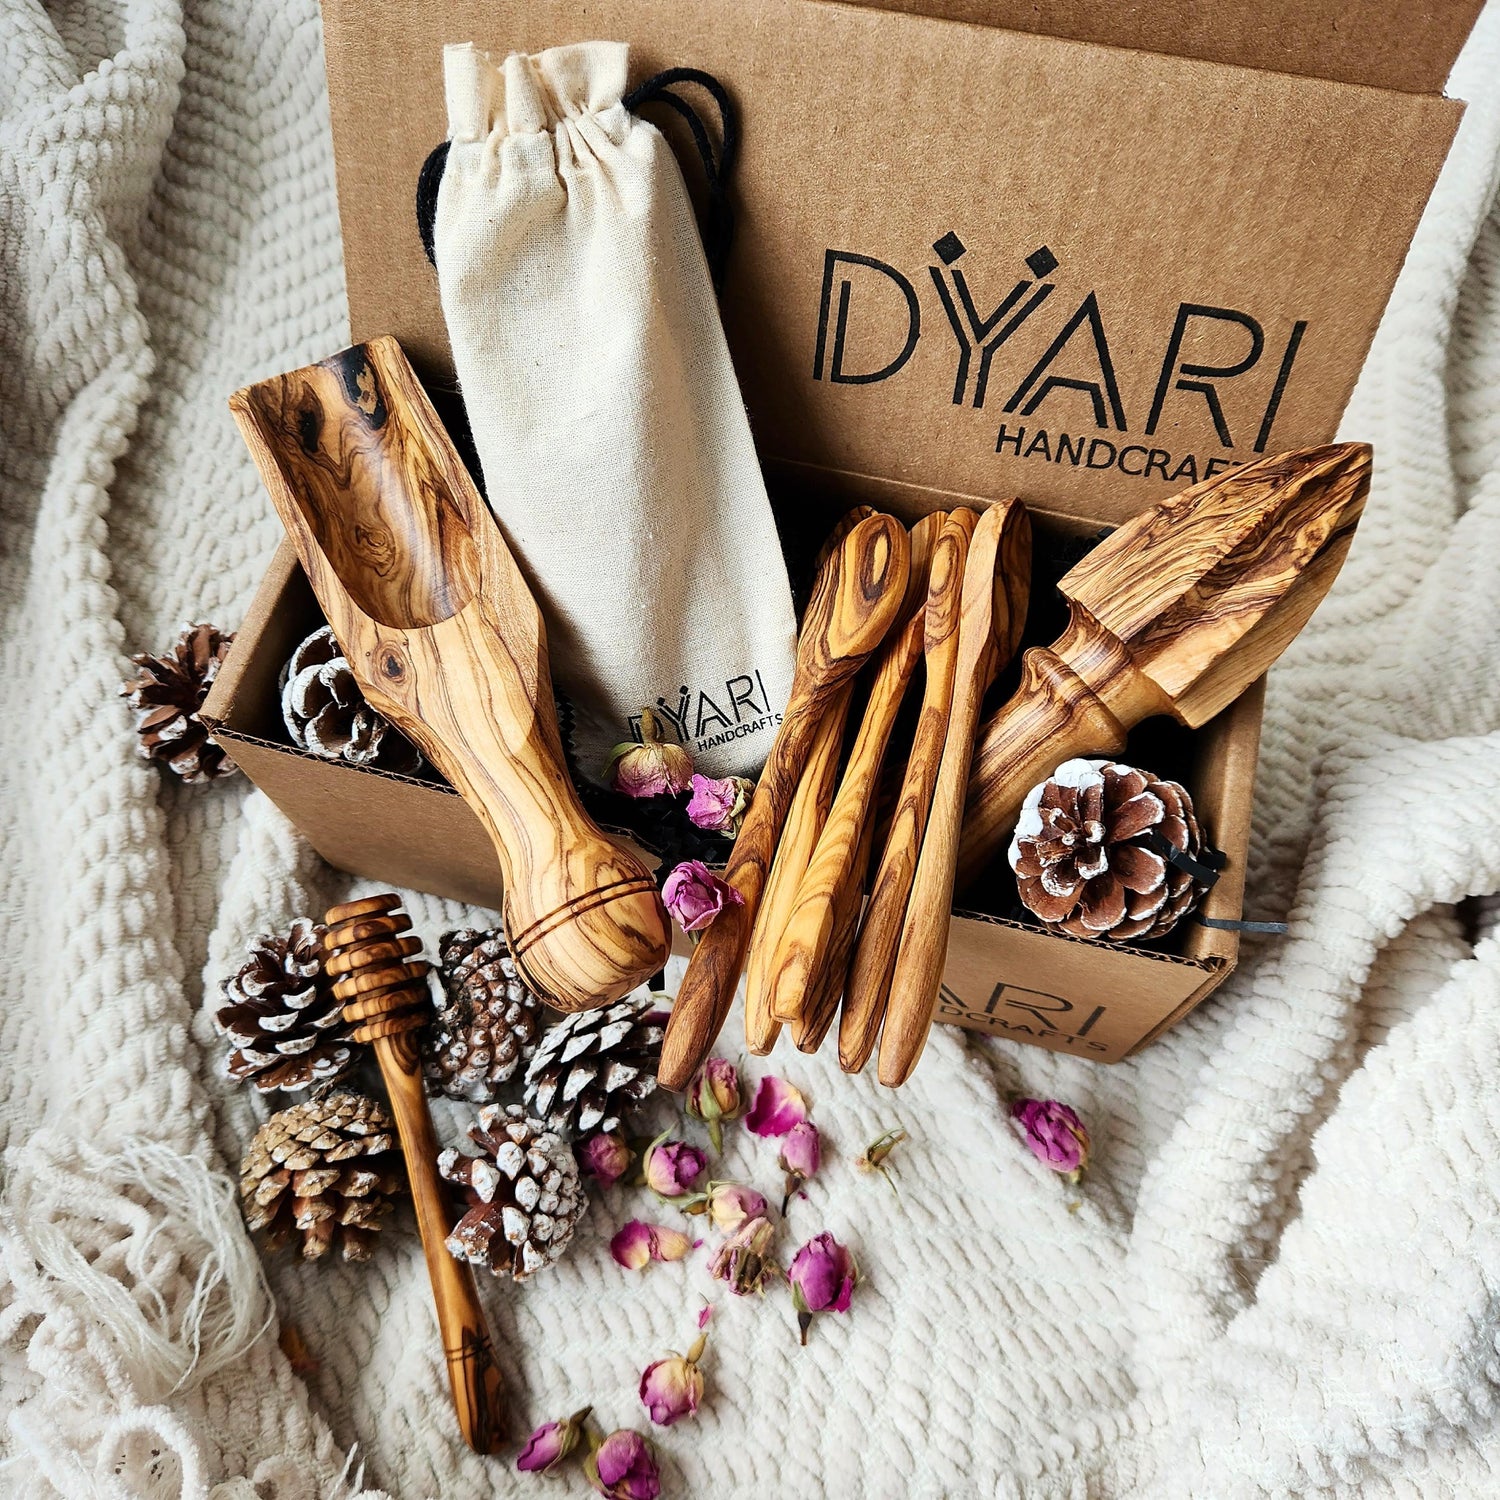 https://dyarihandcrafts.com/cdn/shop/products/essentials-gift-box-dyarihandcrafts-1_1500x.jpg?v=1668195626